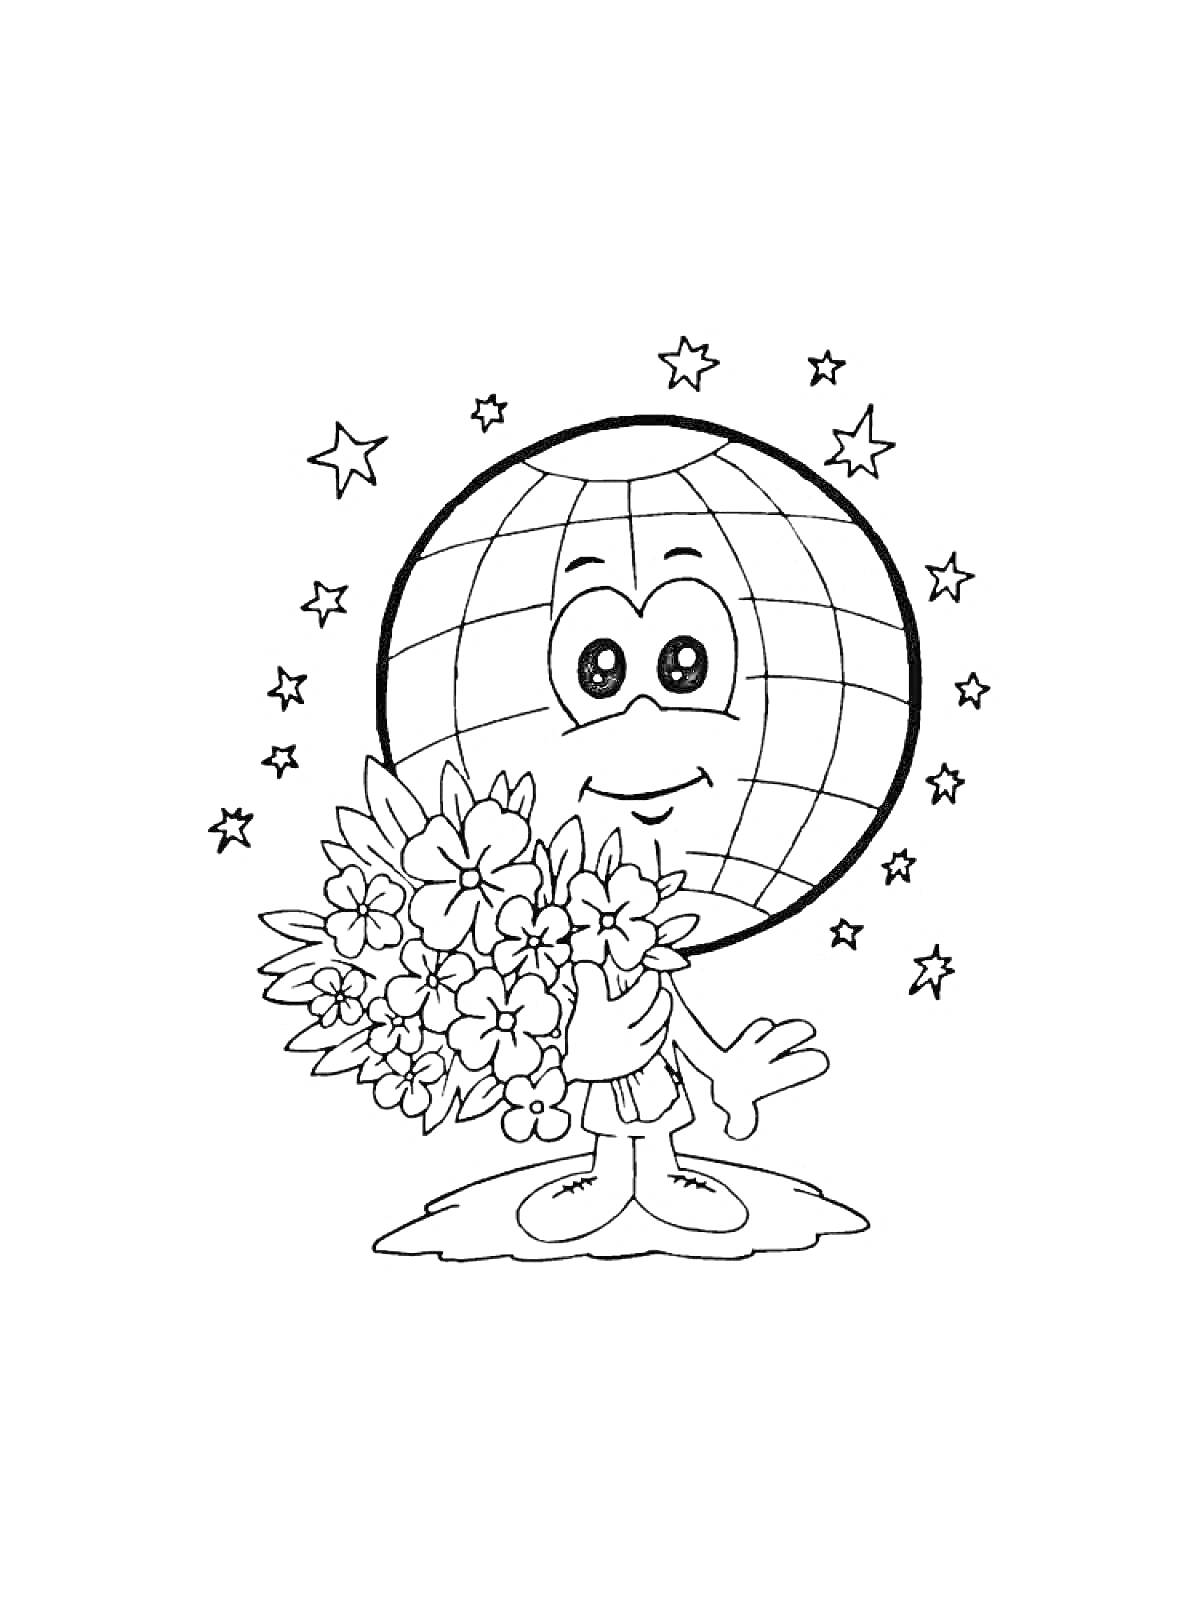 Раскраска Земной шар с лицом, держащий букет цветов, на фоне звёзд